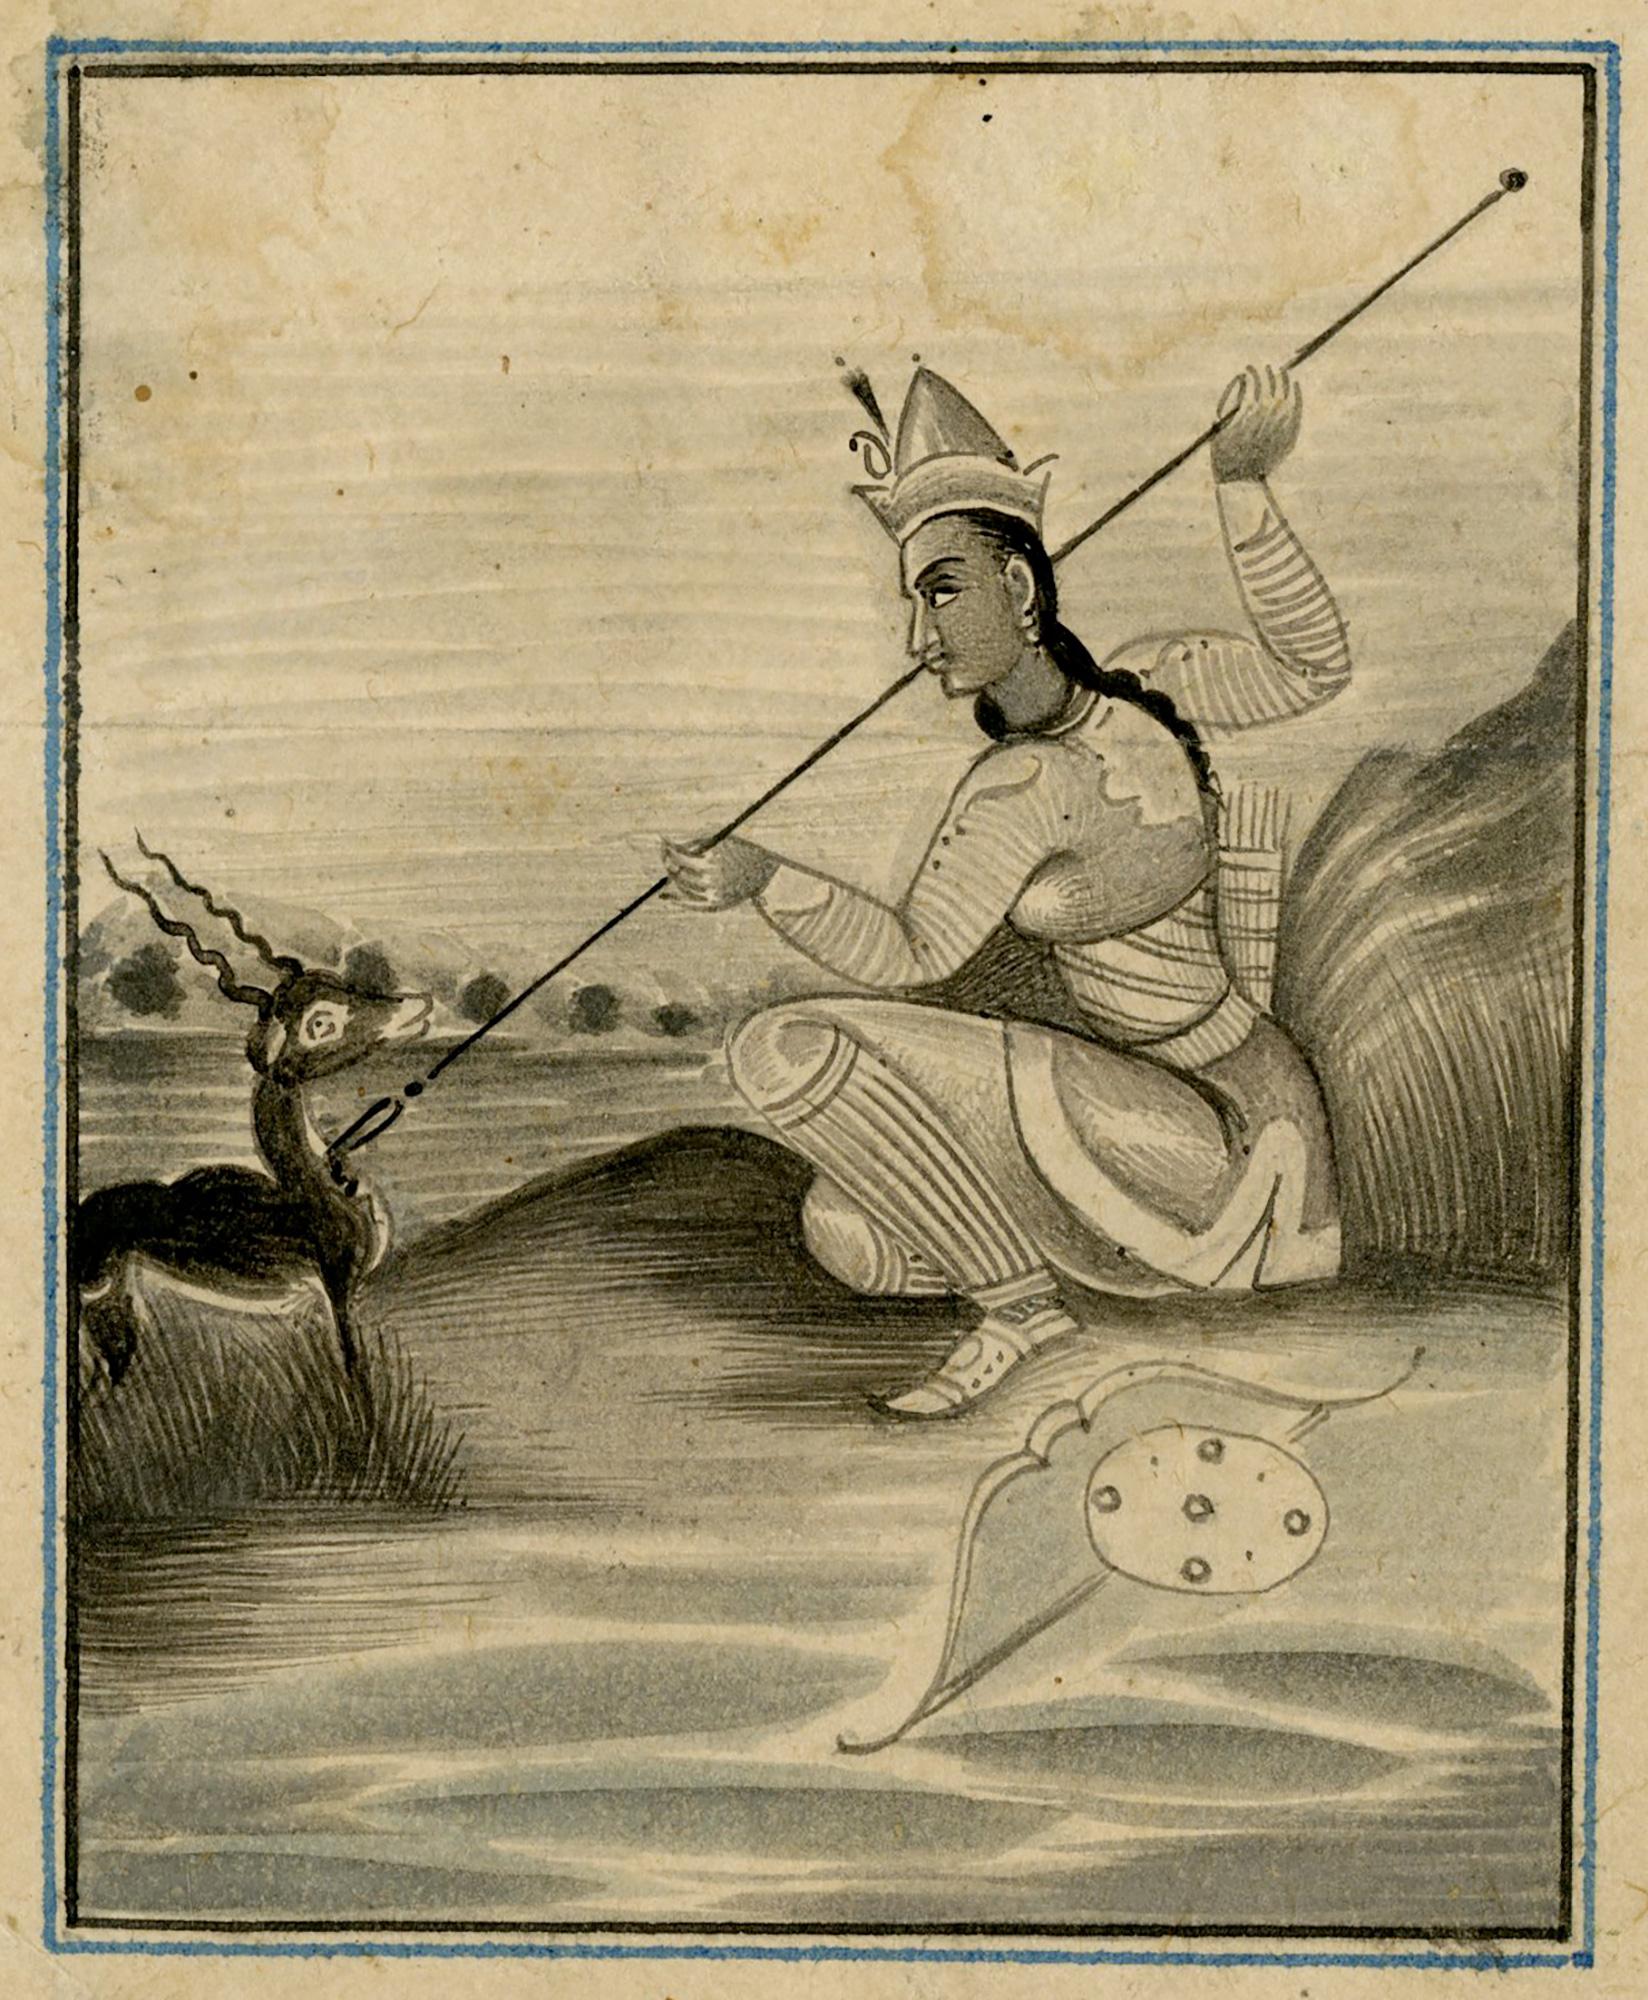  École moghole du 19e siècle, l'impératrice Nur Jahan chasseant une gazelle indienne.